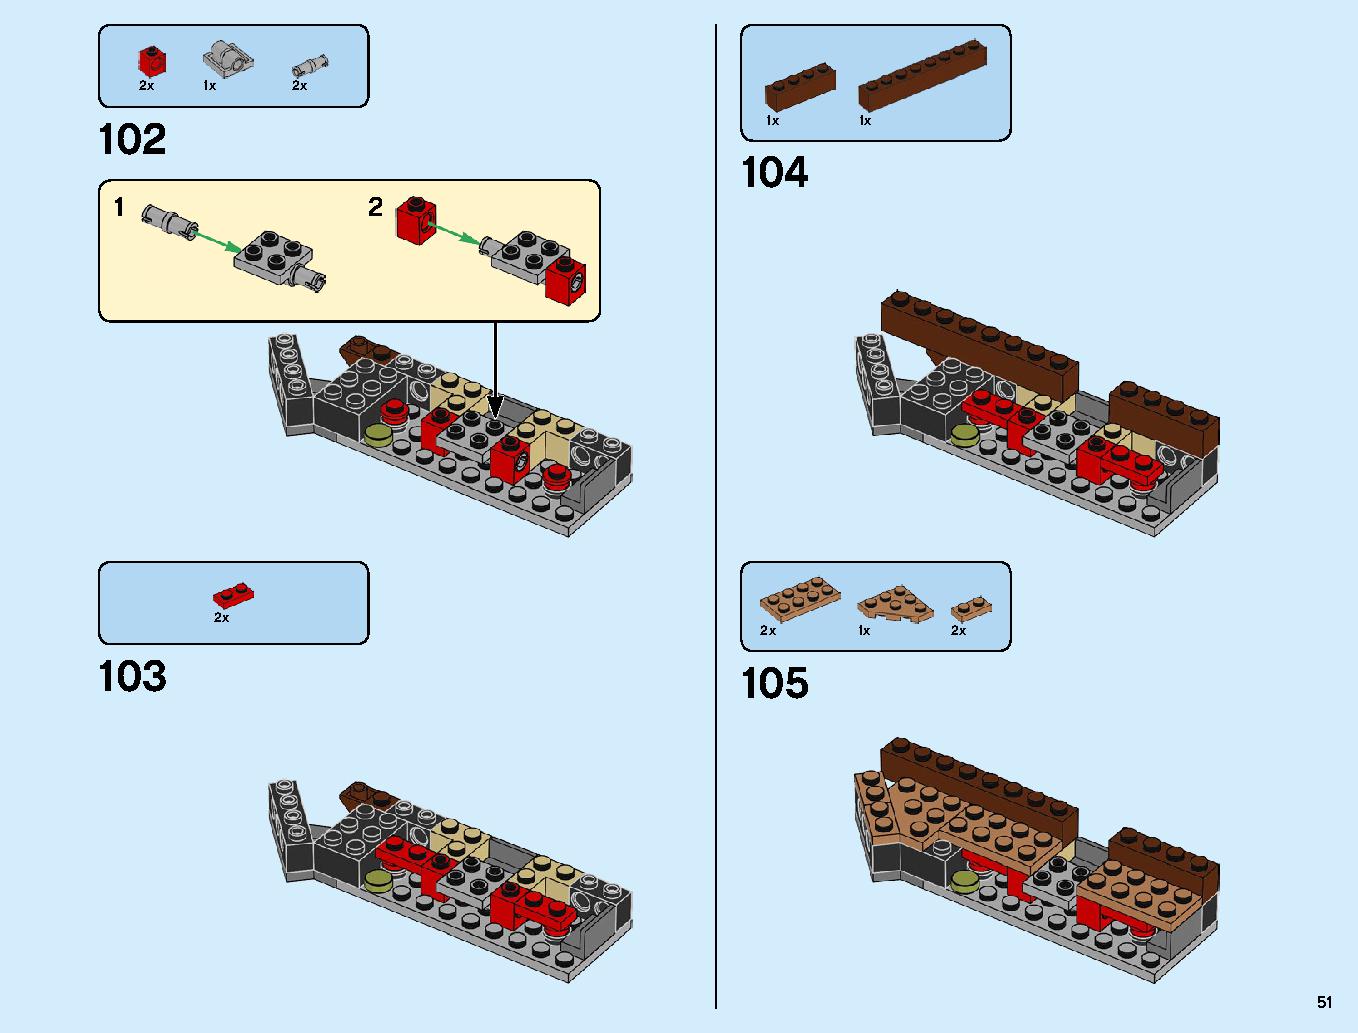 ニンジャ道場 70670 レゴの商品情報 レゴの説明書・組立方法 51 page